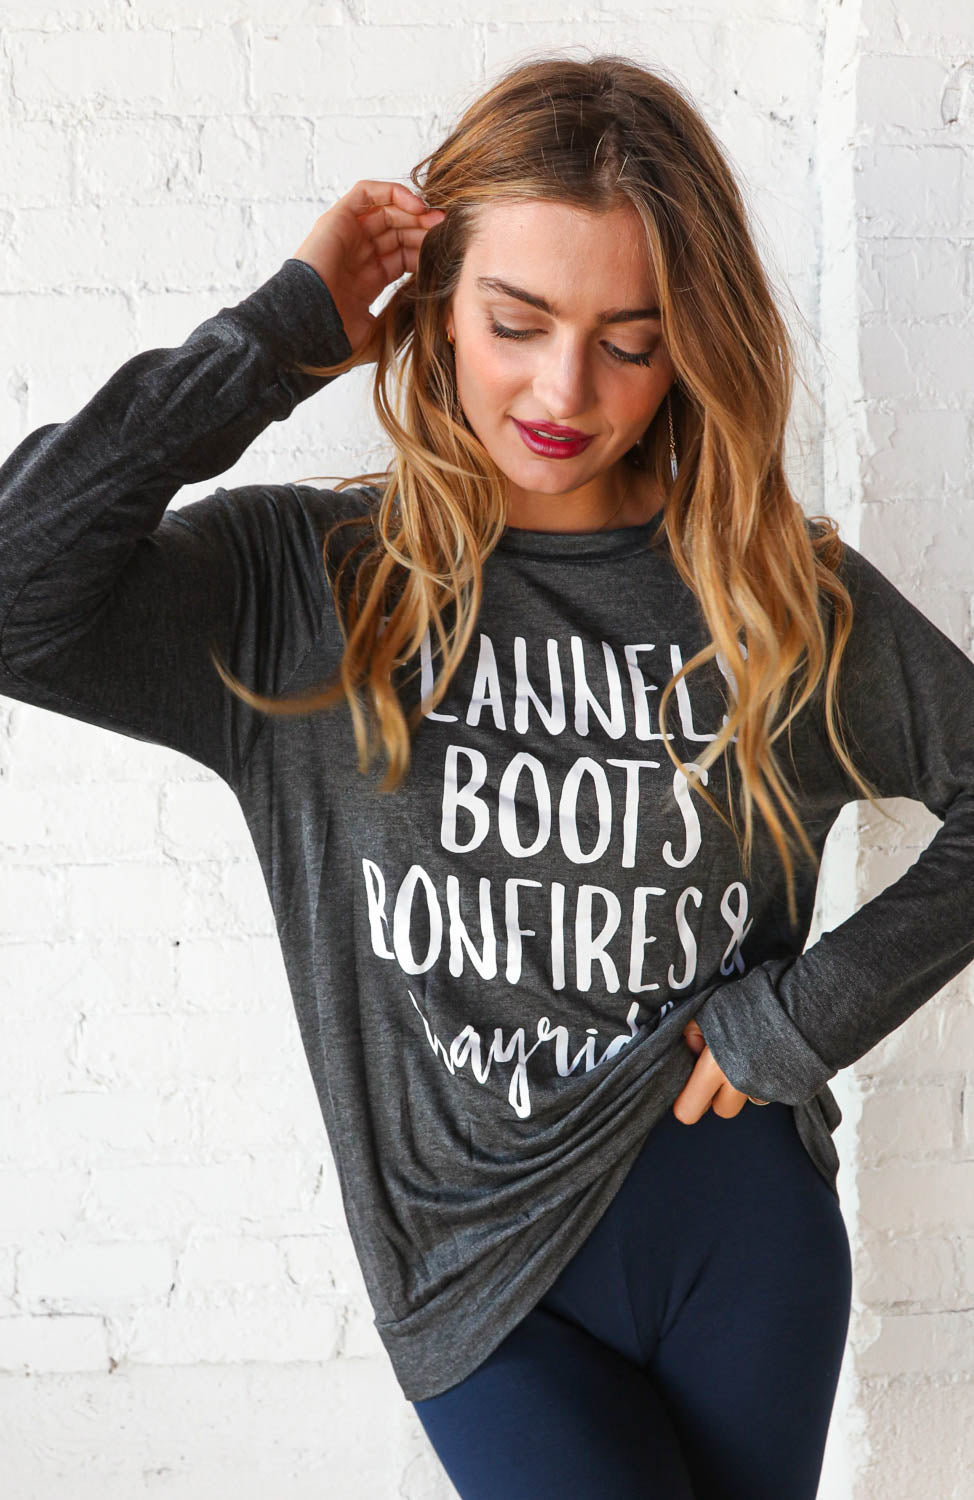 Flannel, Boots, Bonfires Autumn Graphic T-shirt